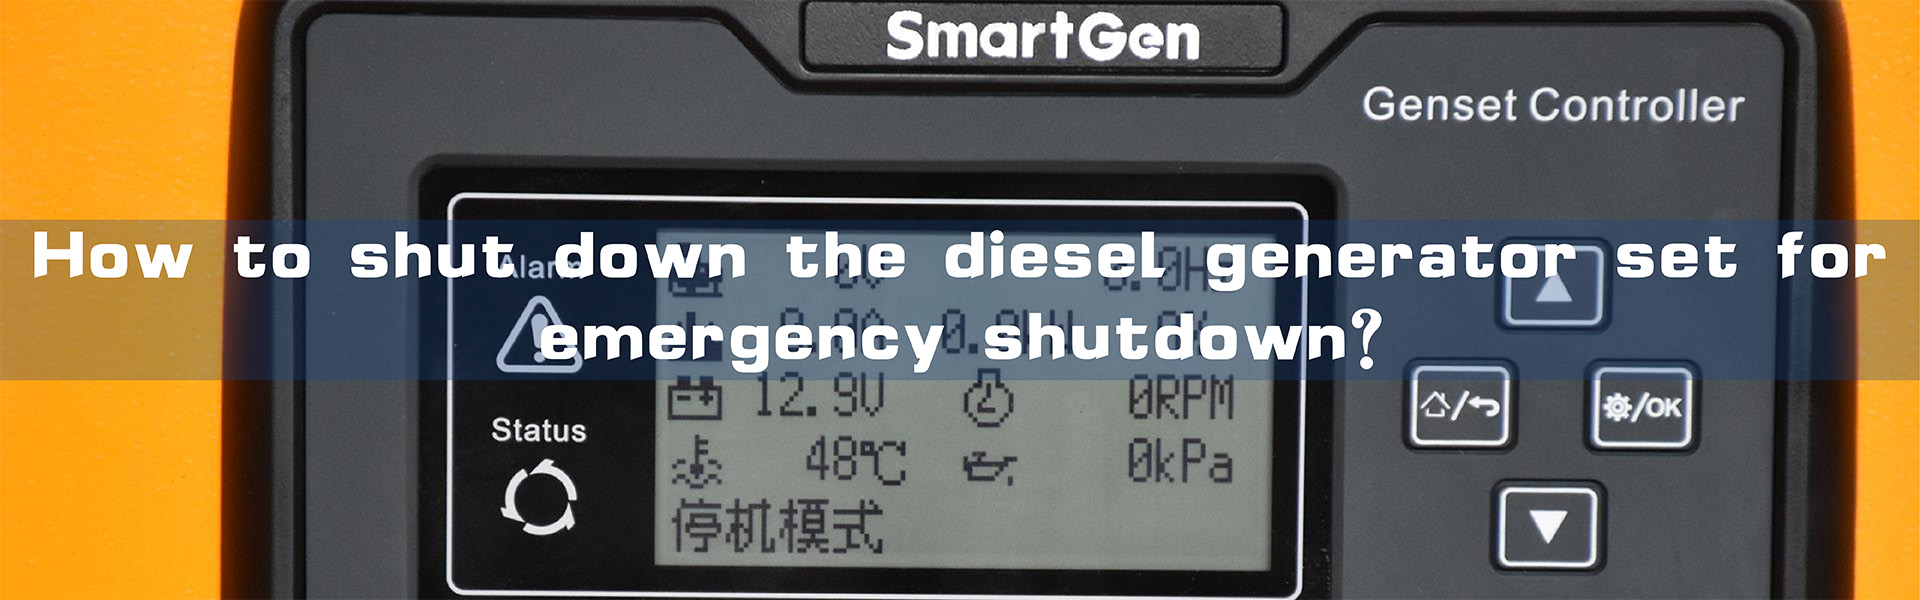 Cumu chjude u gruppu di generatore diesel è quali circustanze necessitanu un arrestu d'emergenza?